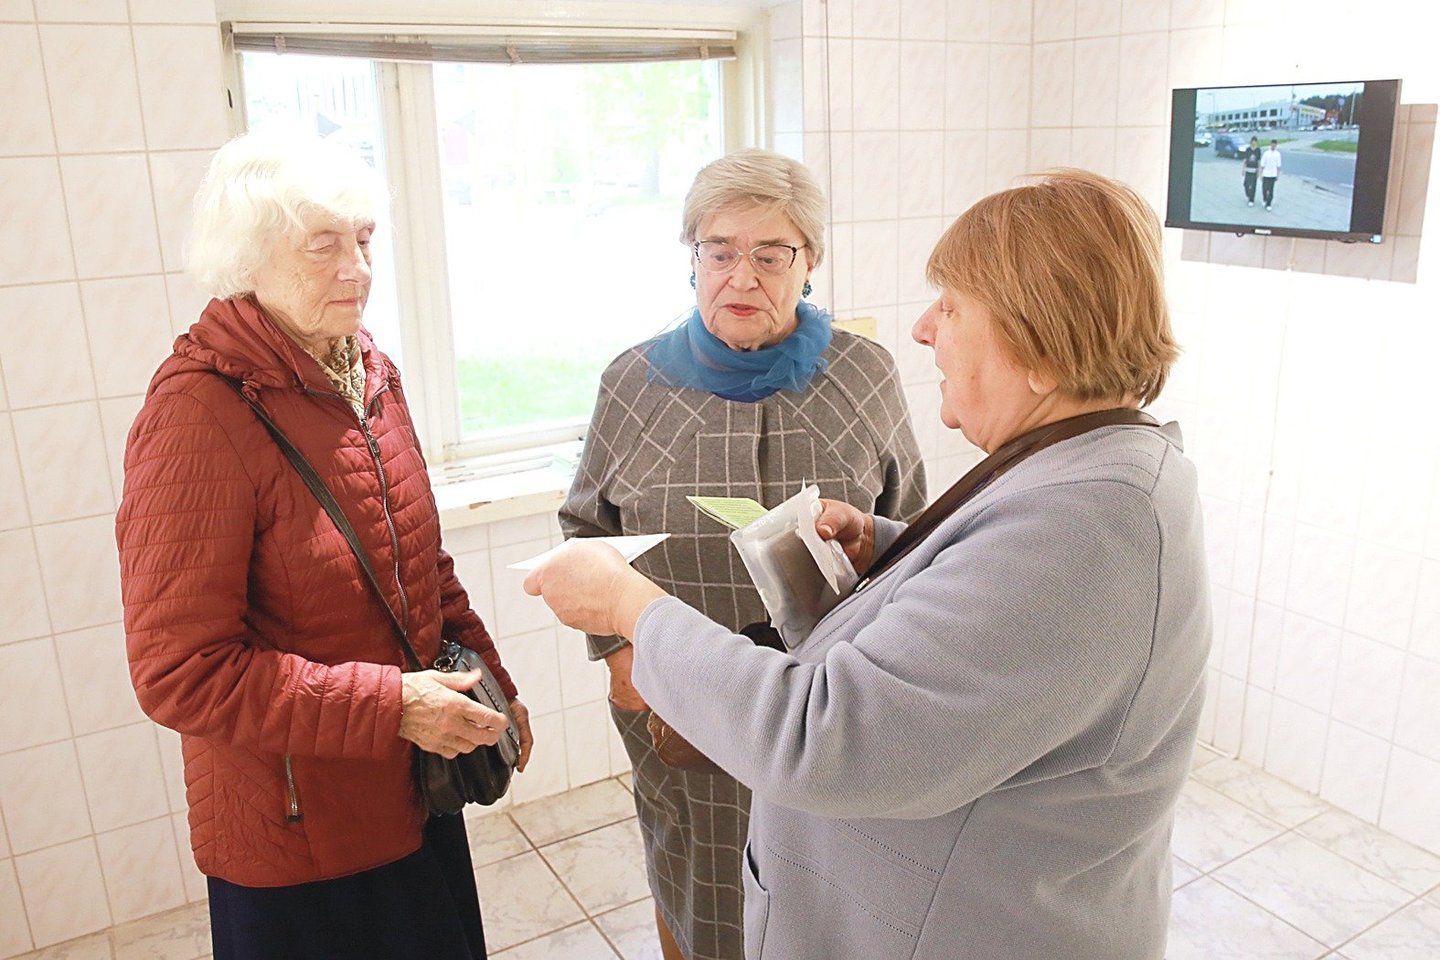 Viršuliškių senbuvės (iš kairės): Vanda, Janė ir Onutė susitiko parodoje.<br>R.Danisevičiaus nuotr.